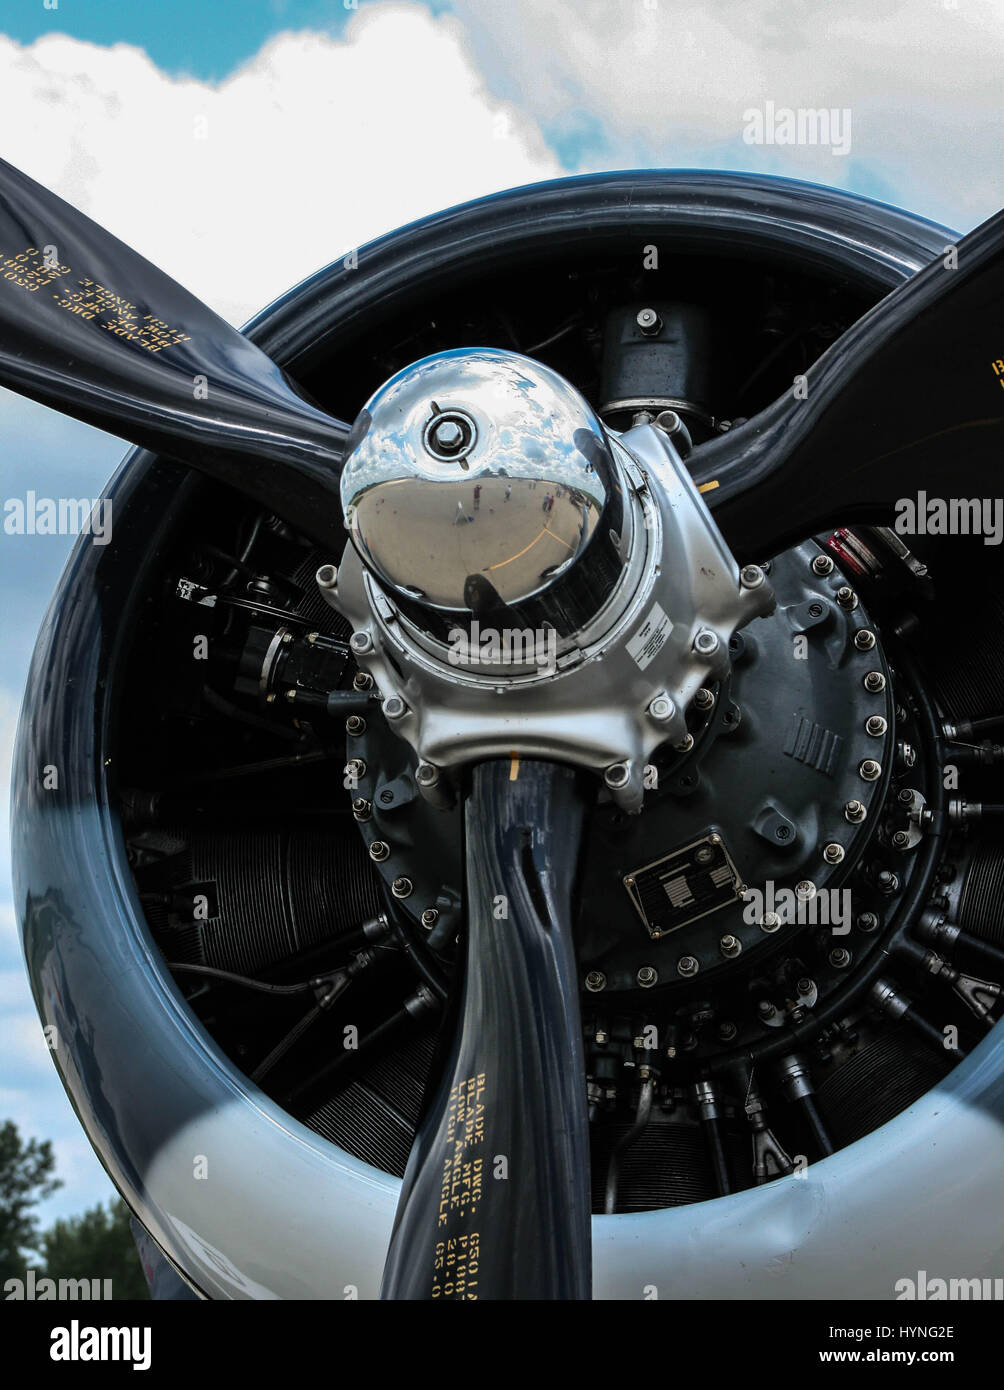 Inverkehrbringen Außenborder Propeller reflektierende Kennzeichen Tasche  Stockfotografie - Alamy